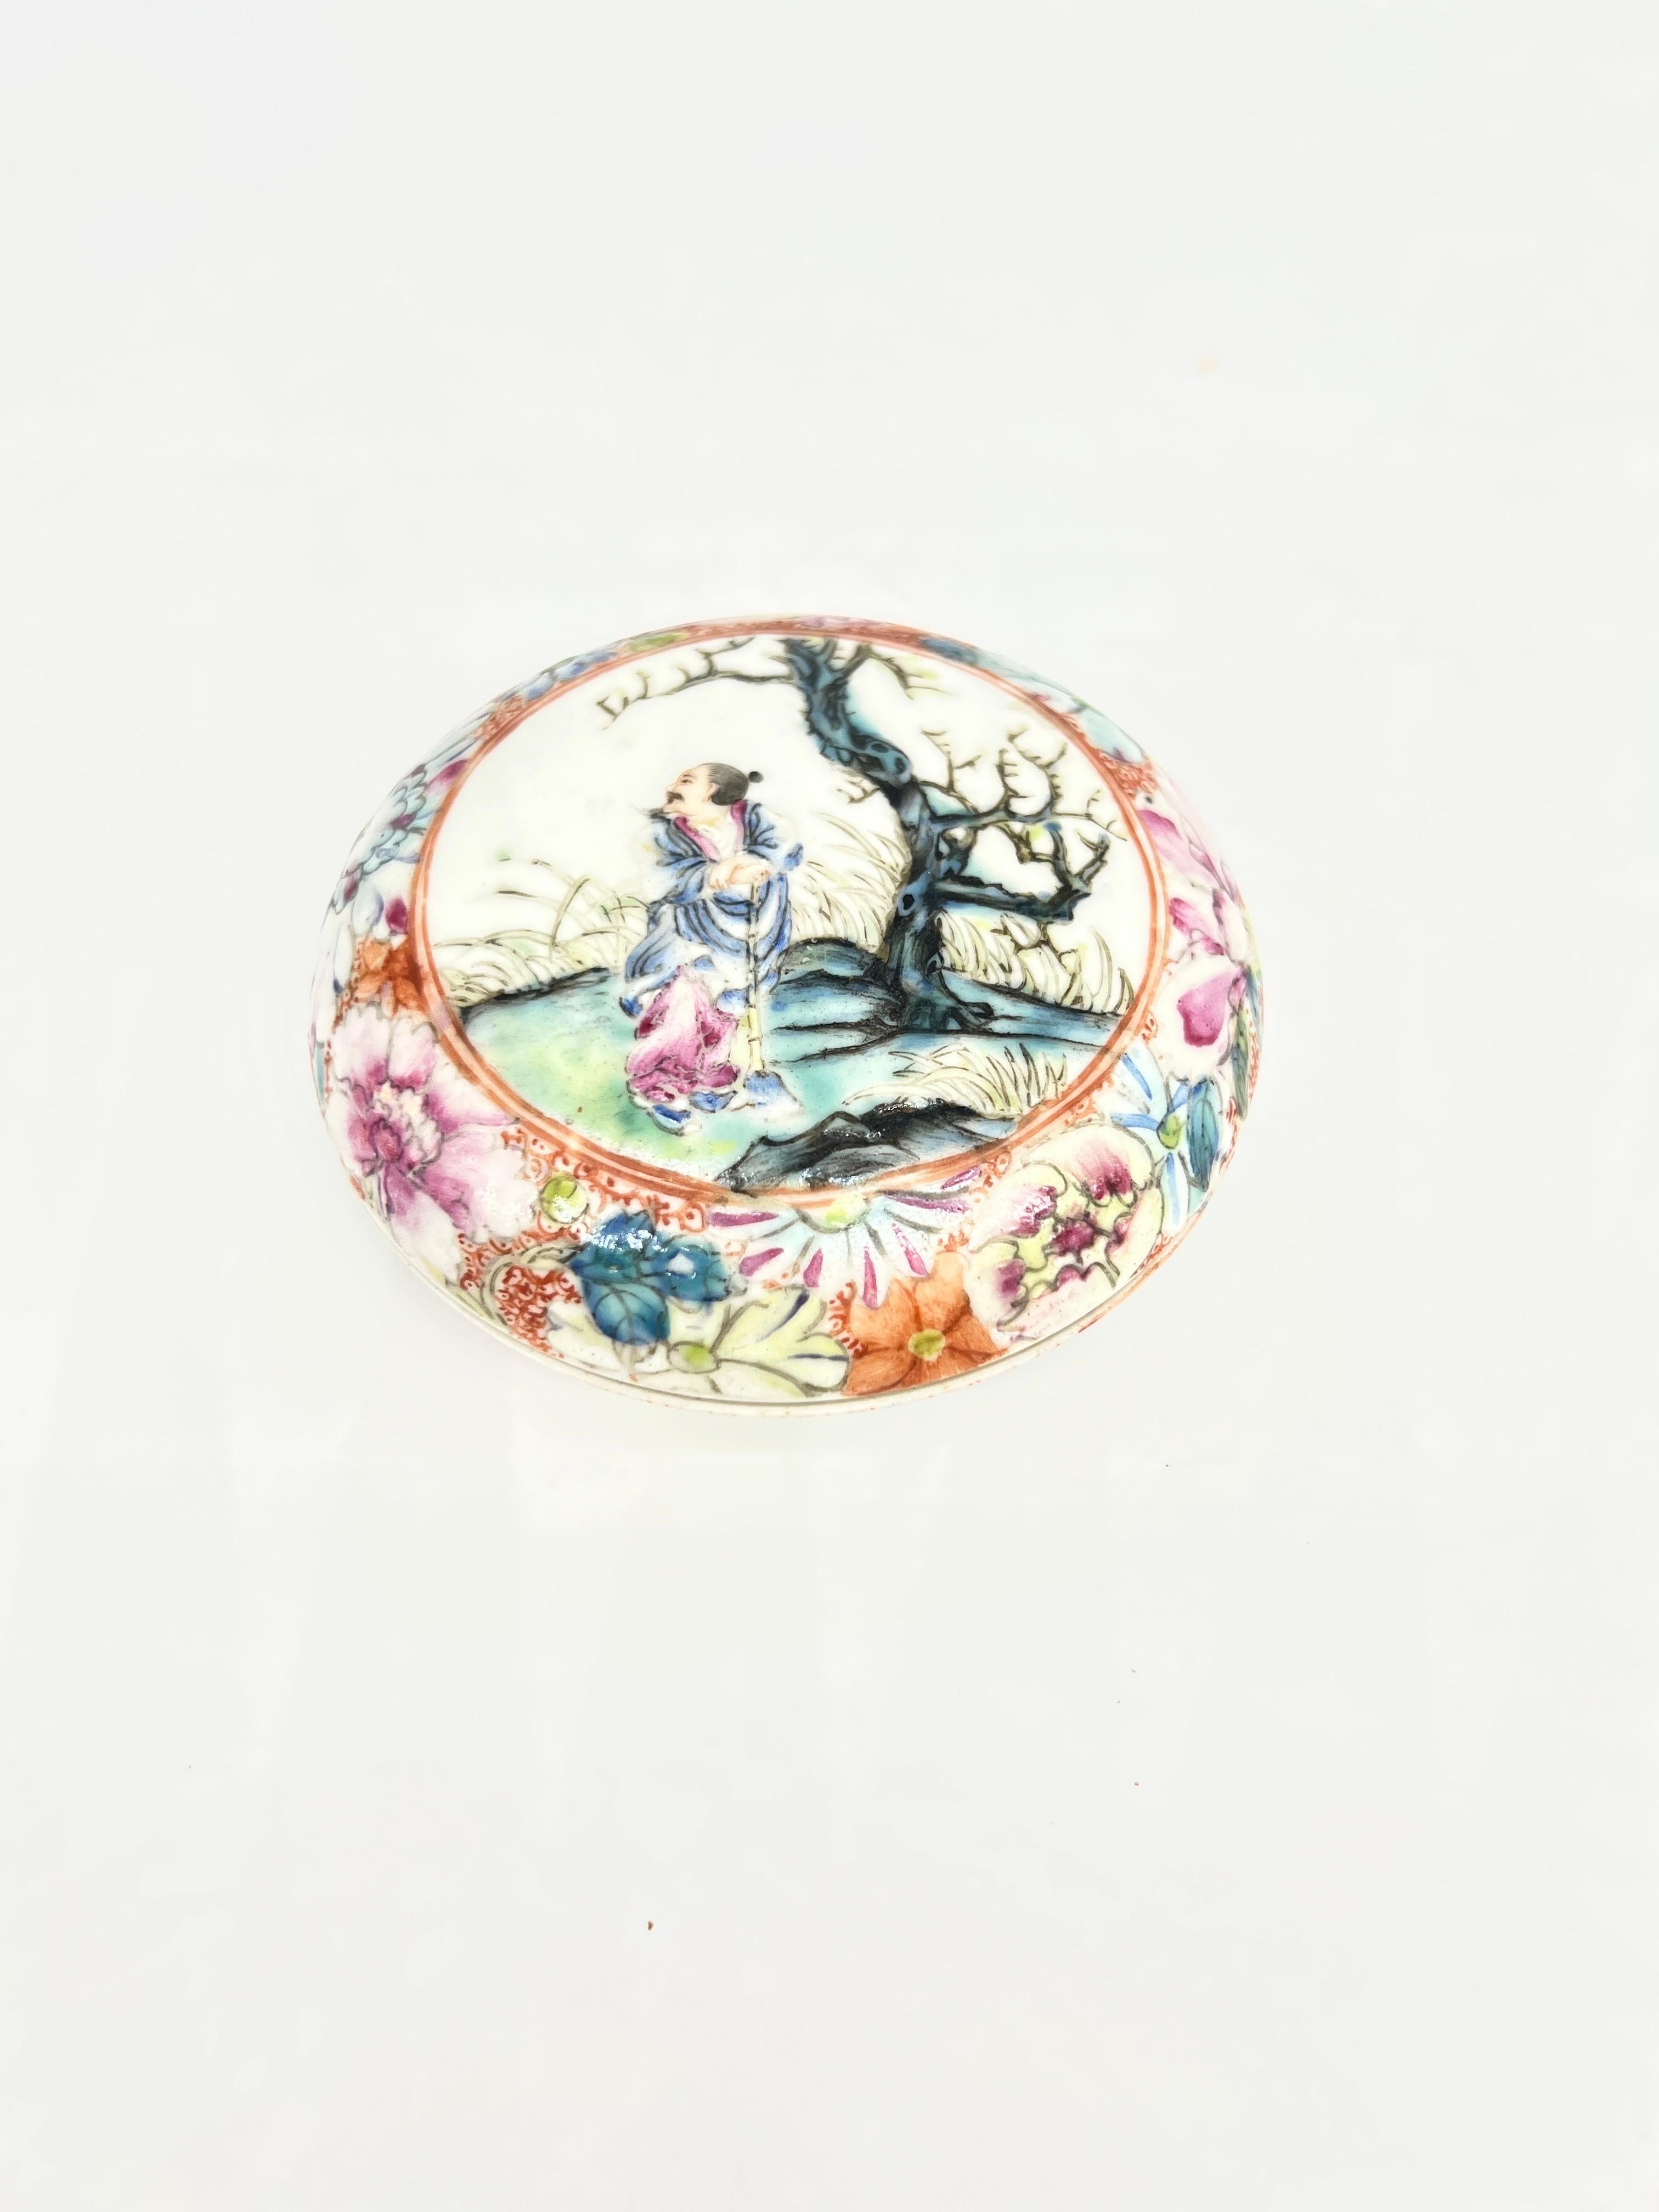 Das antike chinesische Famille Rose Porzellan mit Deckel und Qlong-Marke ist ein bemerkenswertes Stück chinesischer Porzellankunst. Dieser Krug aus der Qianlong-Periode zeigt die für diese Epoche charakteristische exquisite Handwerkskunst und Liebe